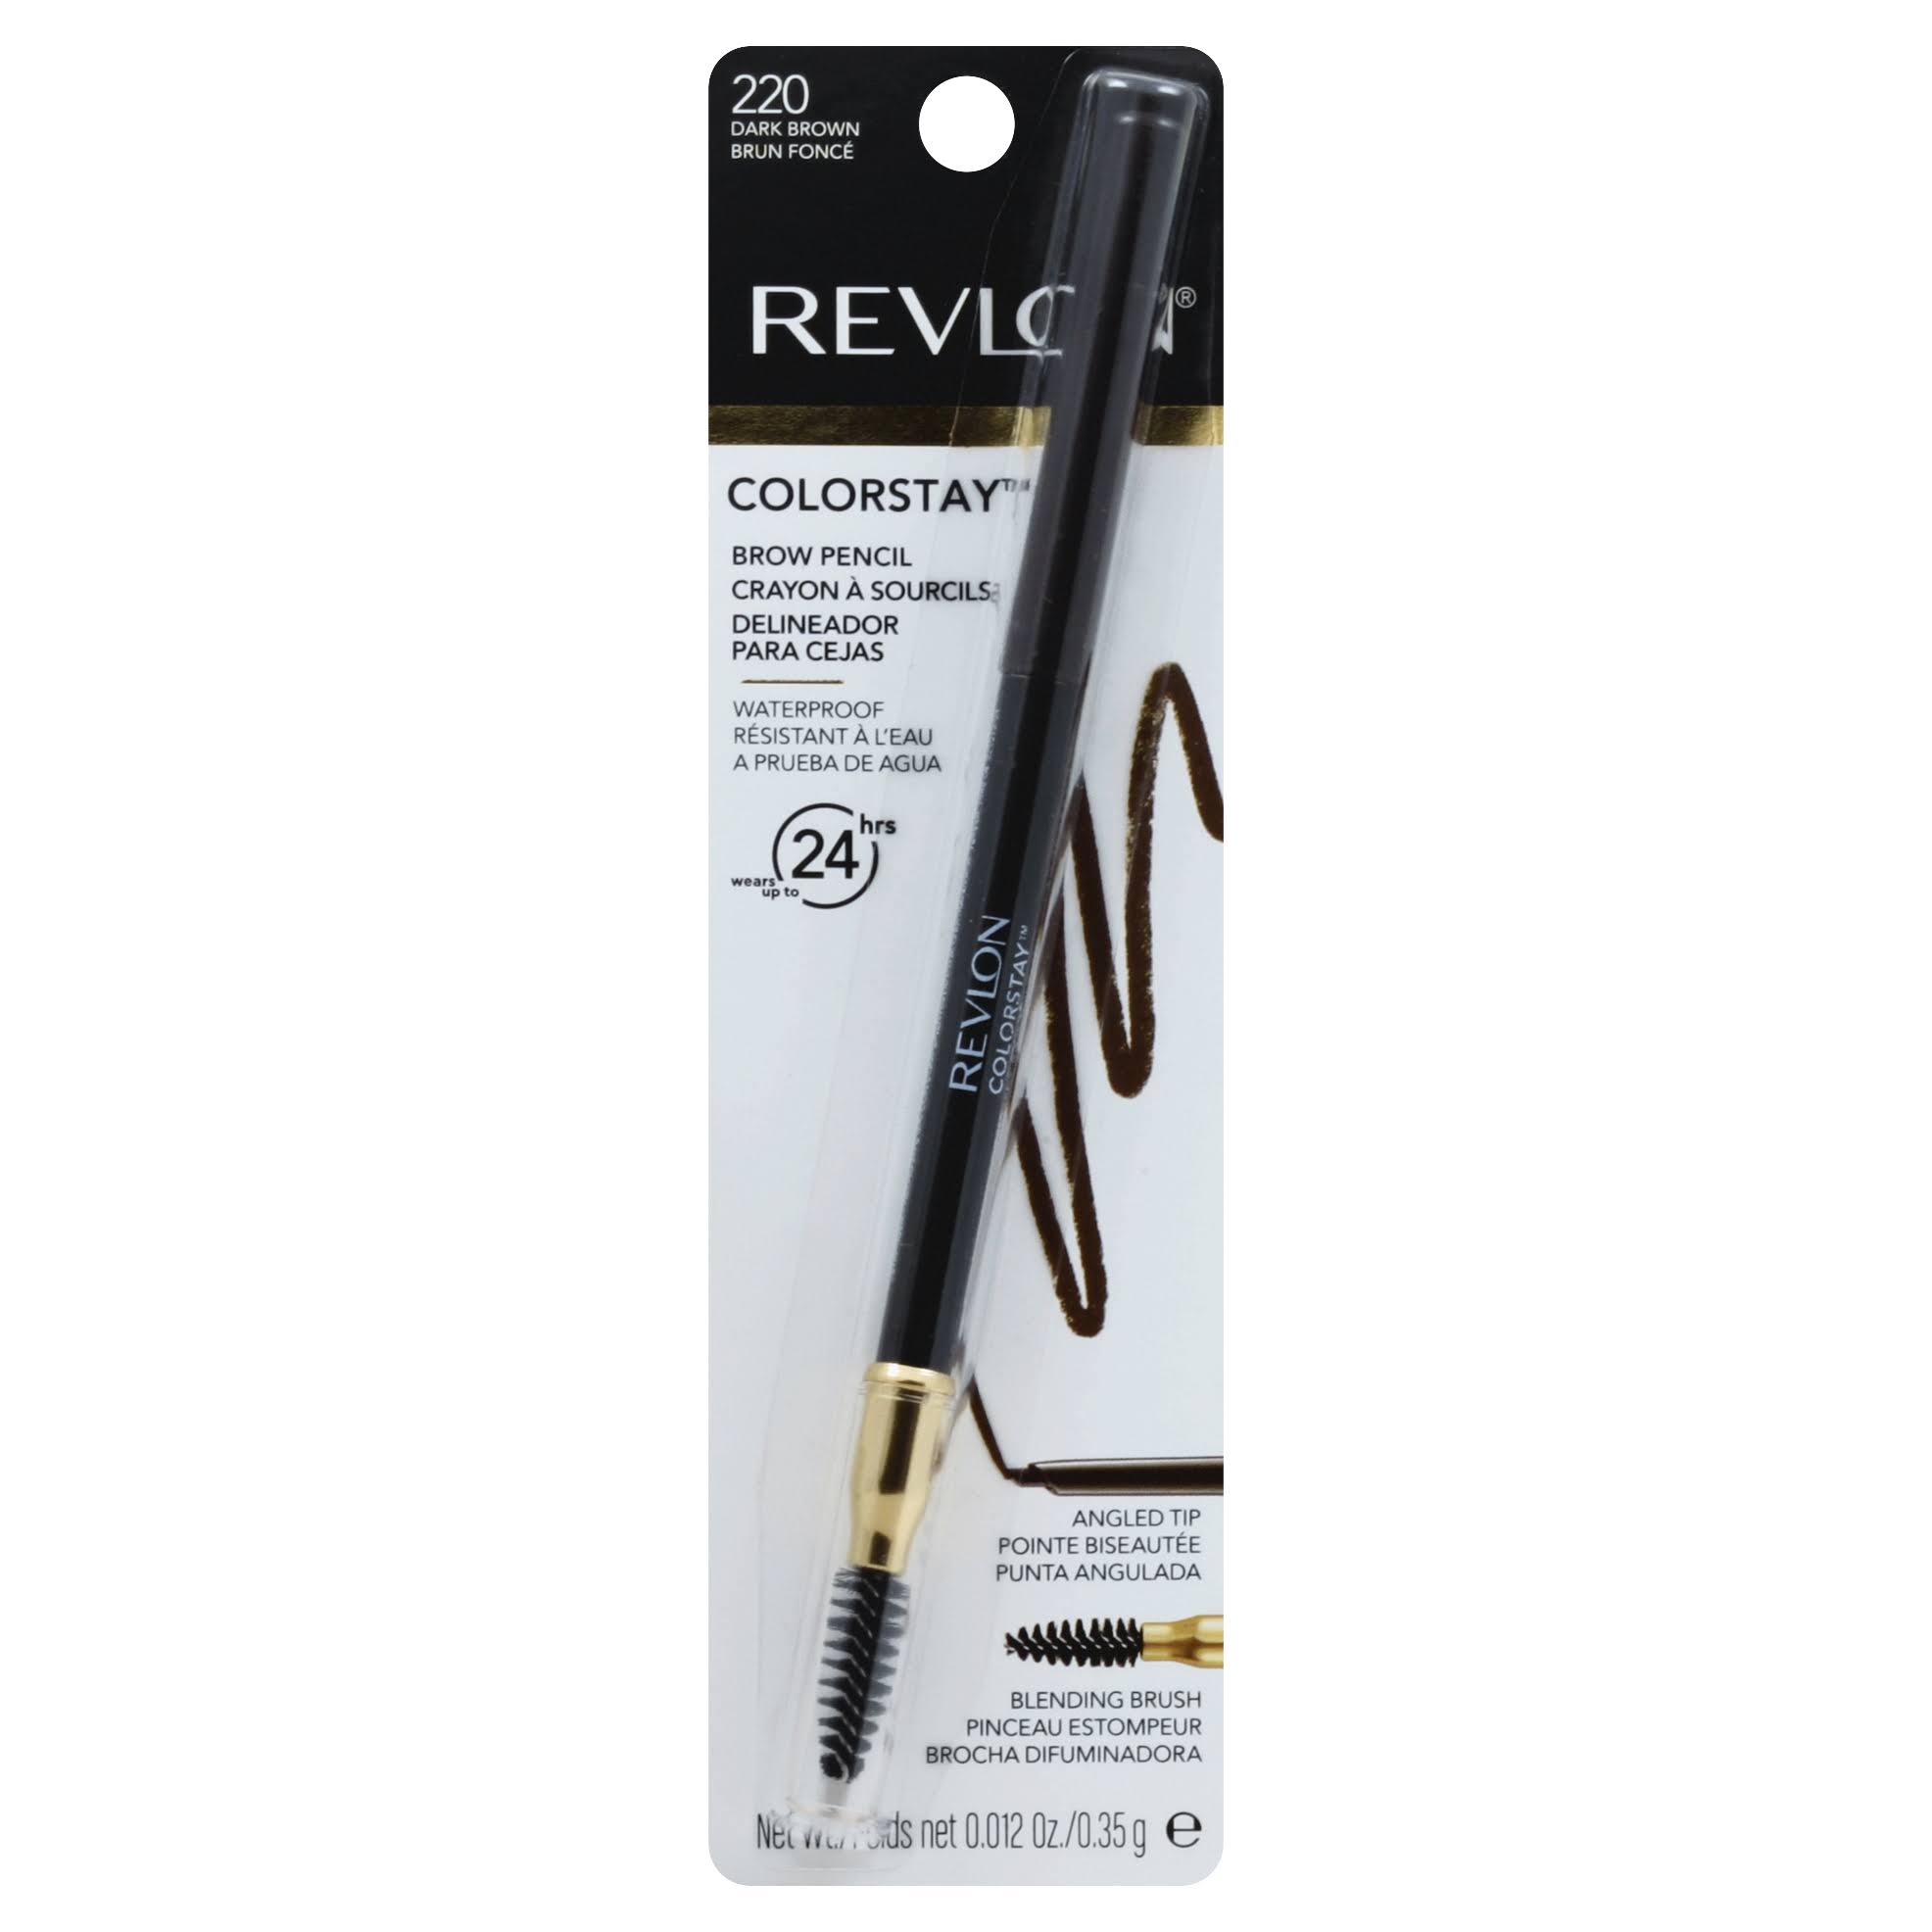 Revlon Colorstay Brow Pencil - 220 Dark Brown